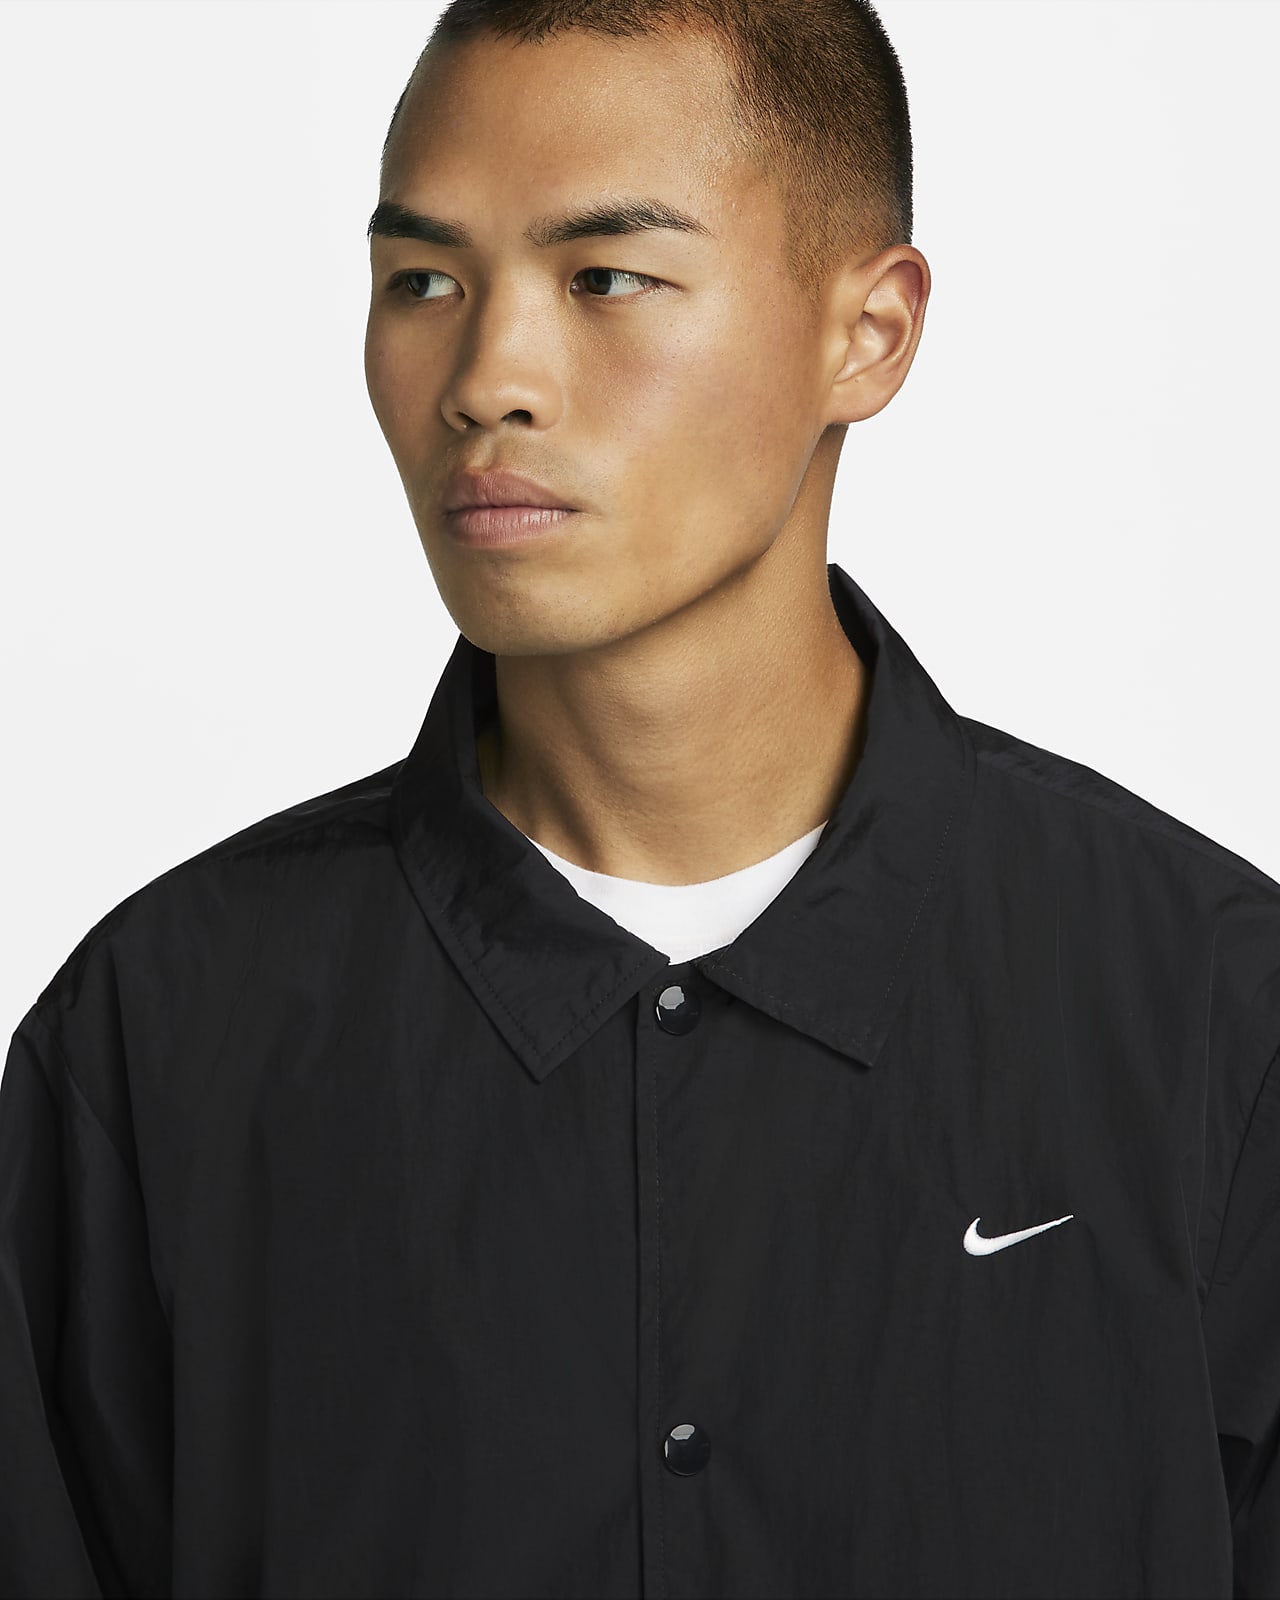 Nike Sportswear Men's Coaches Jacket. Nike HR